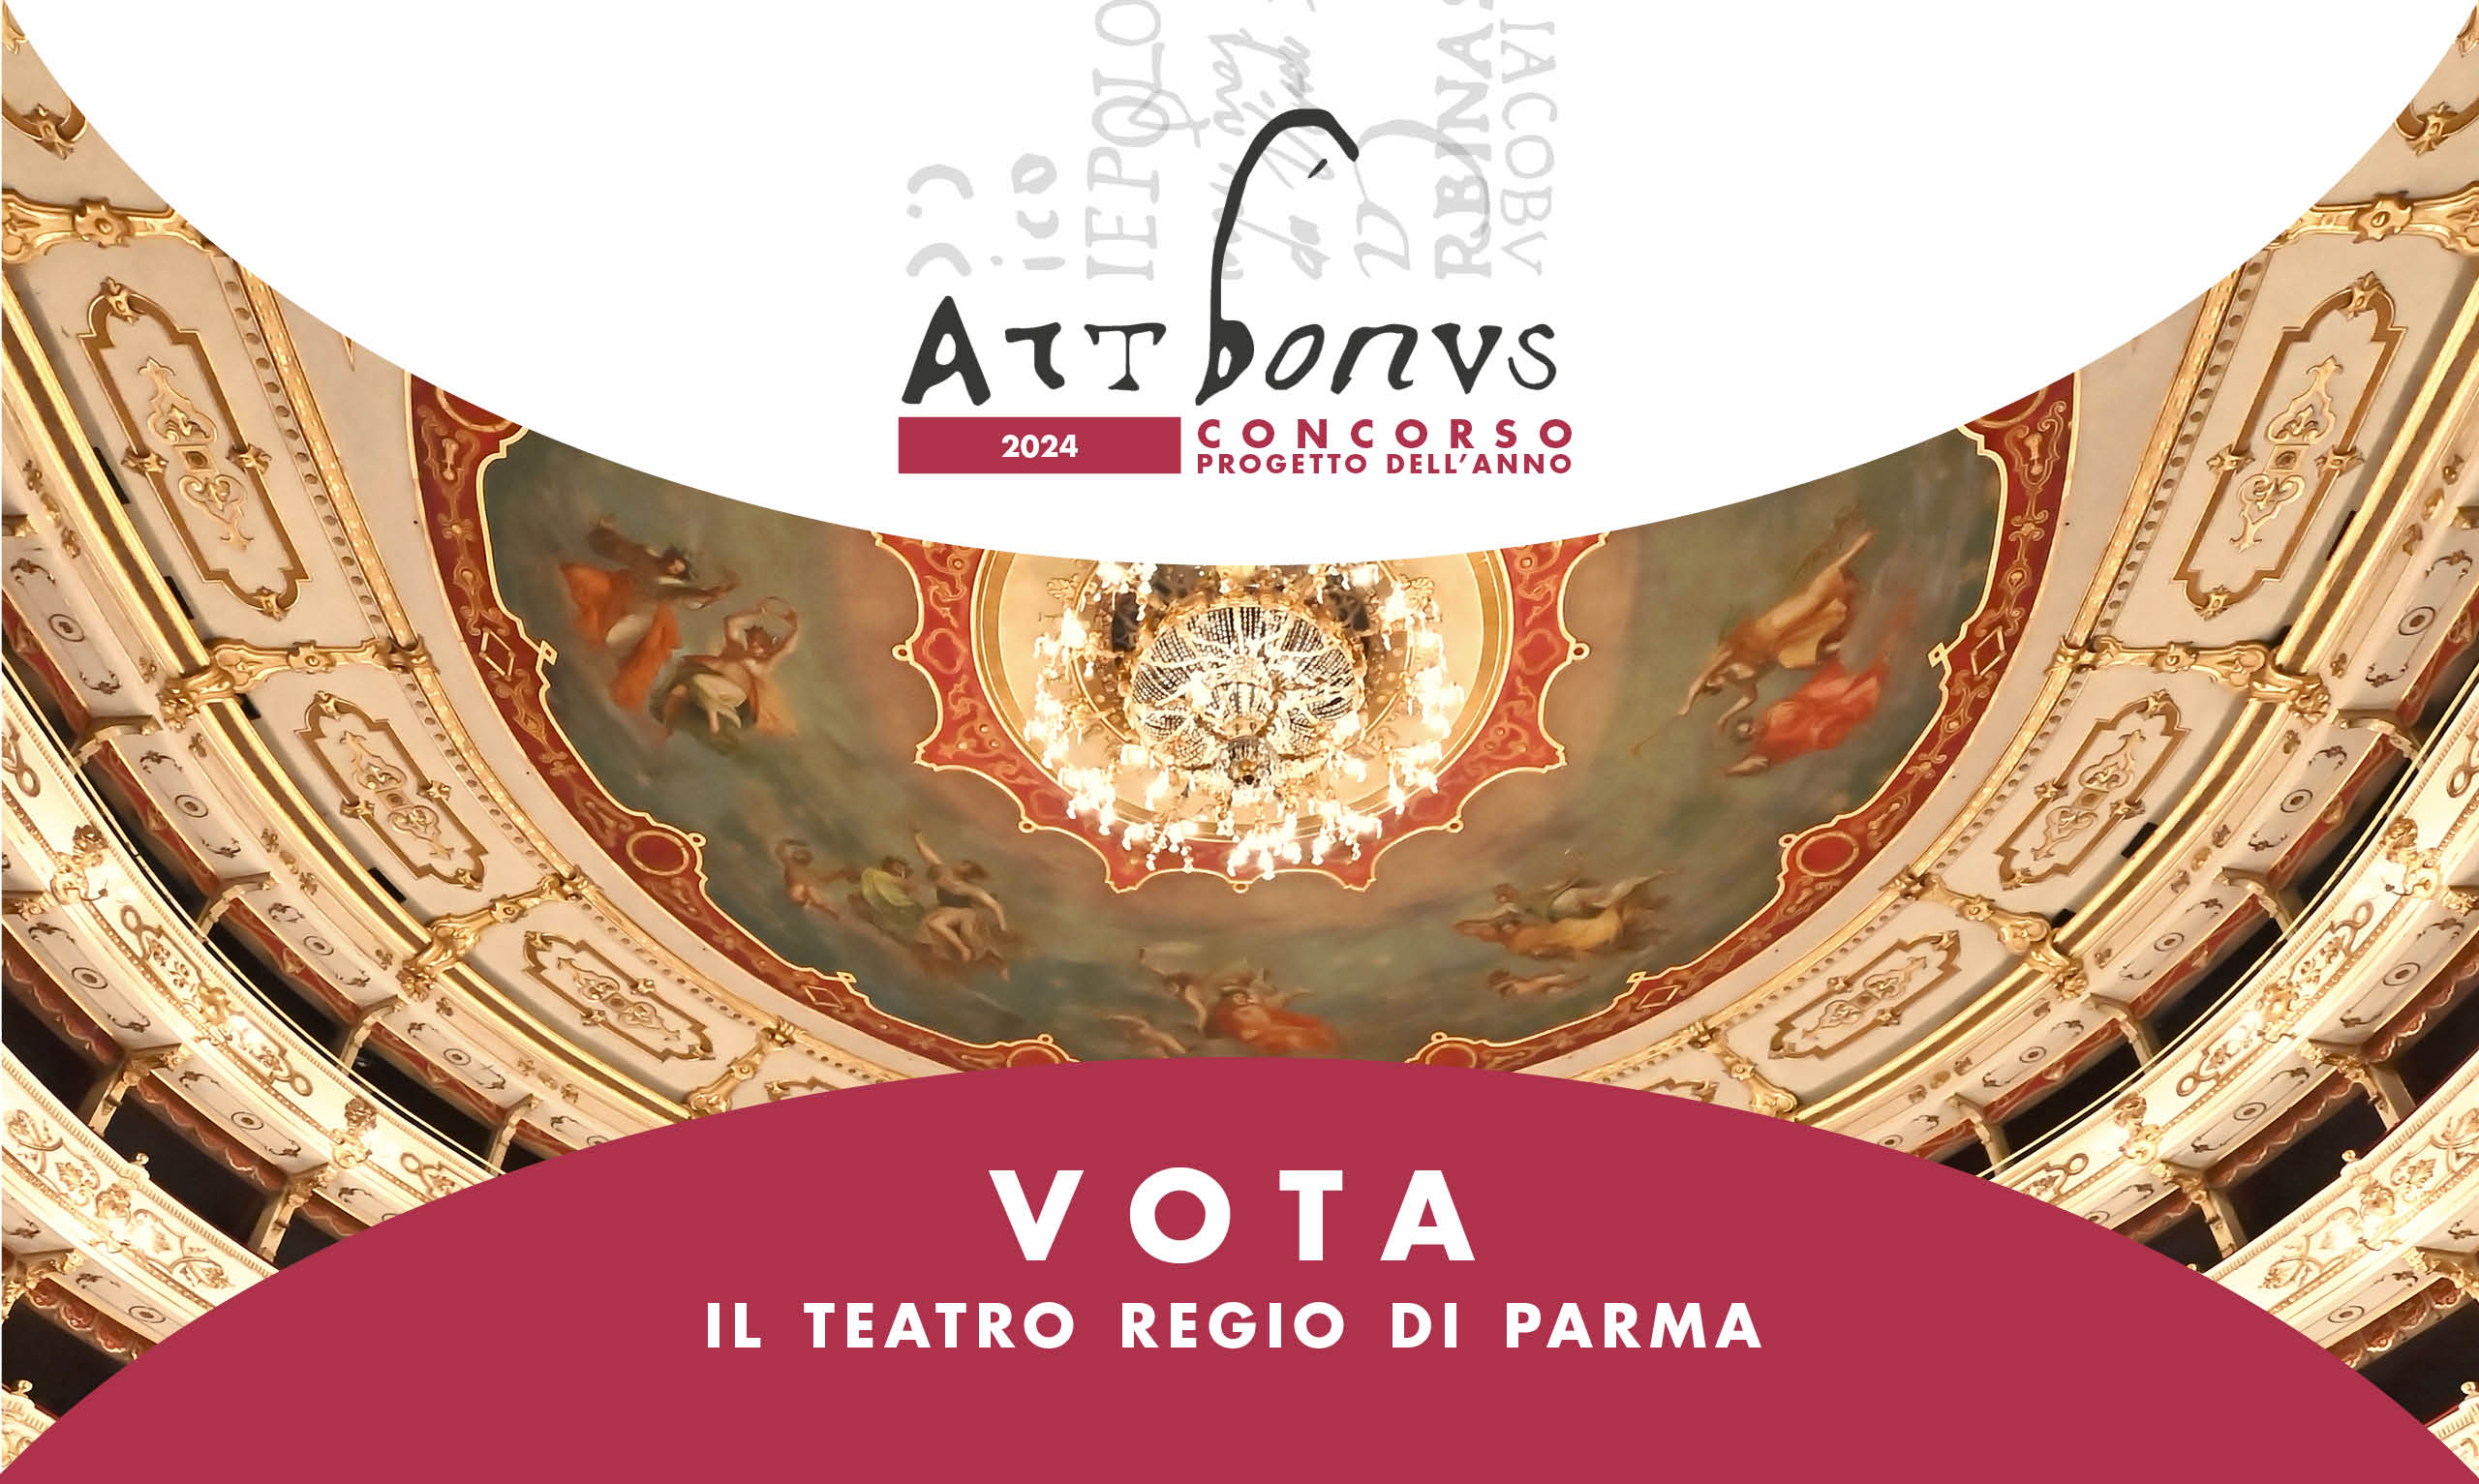 Zecchino d'Oro show  Parma - Teatro Regio 23-24